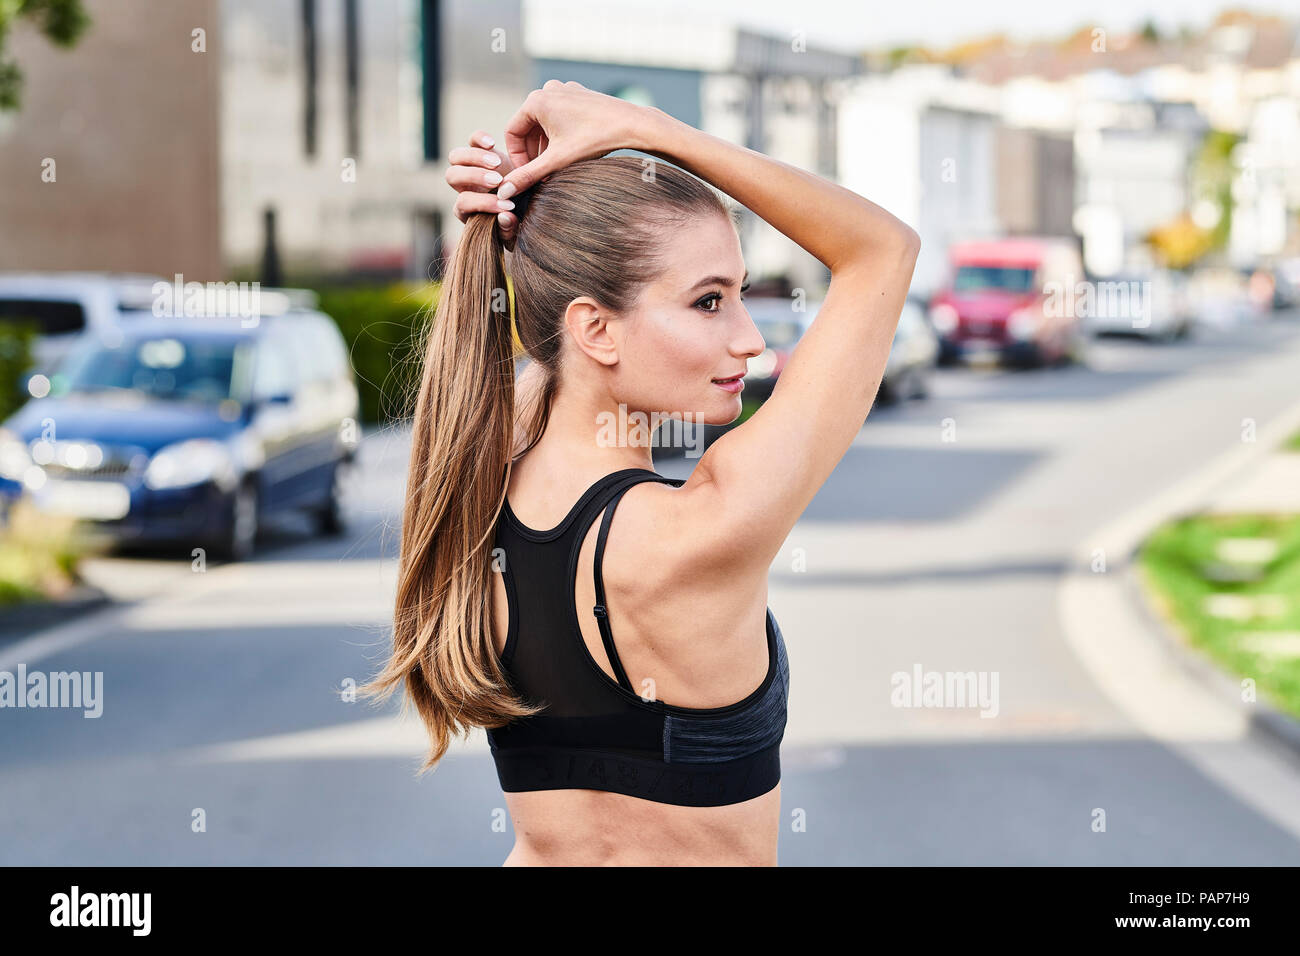 Attraktive sportliche junge Frau auf einer Straße in der Stadt Stockfoto